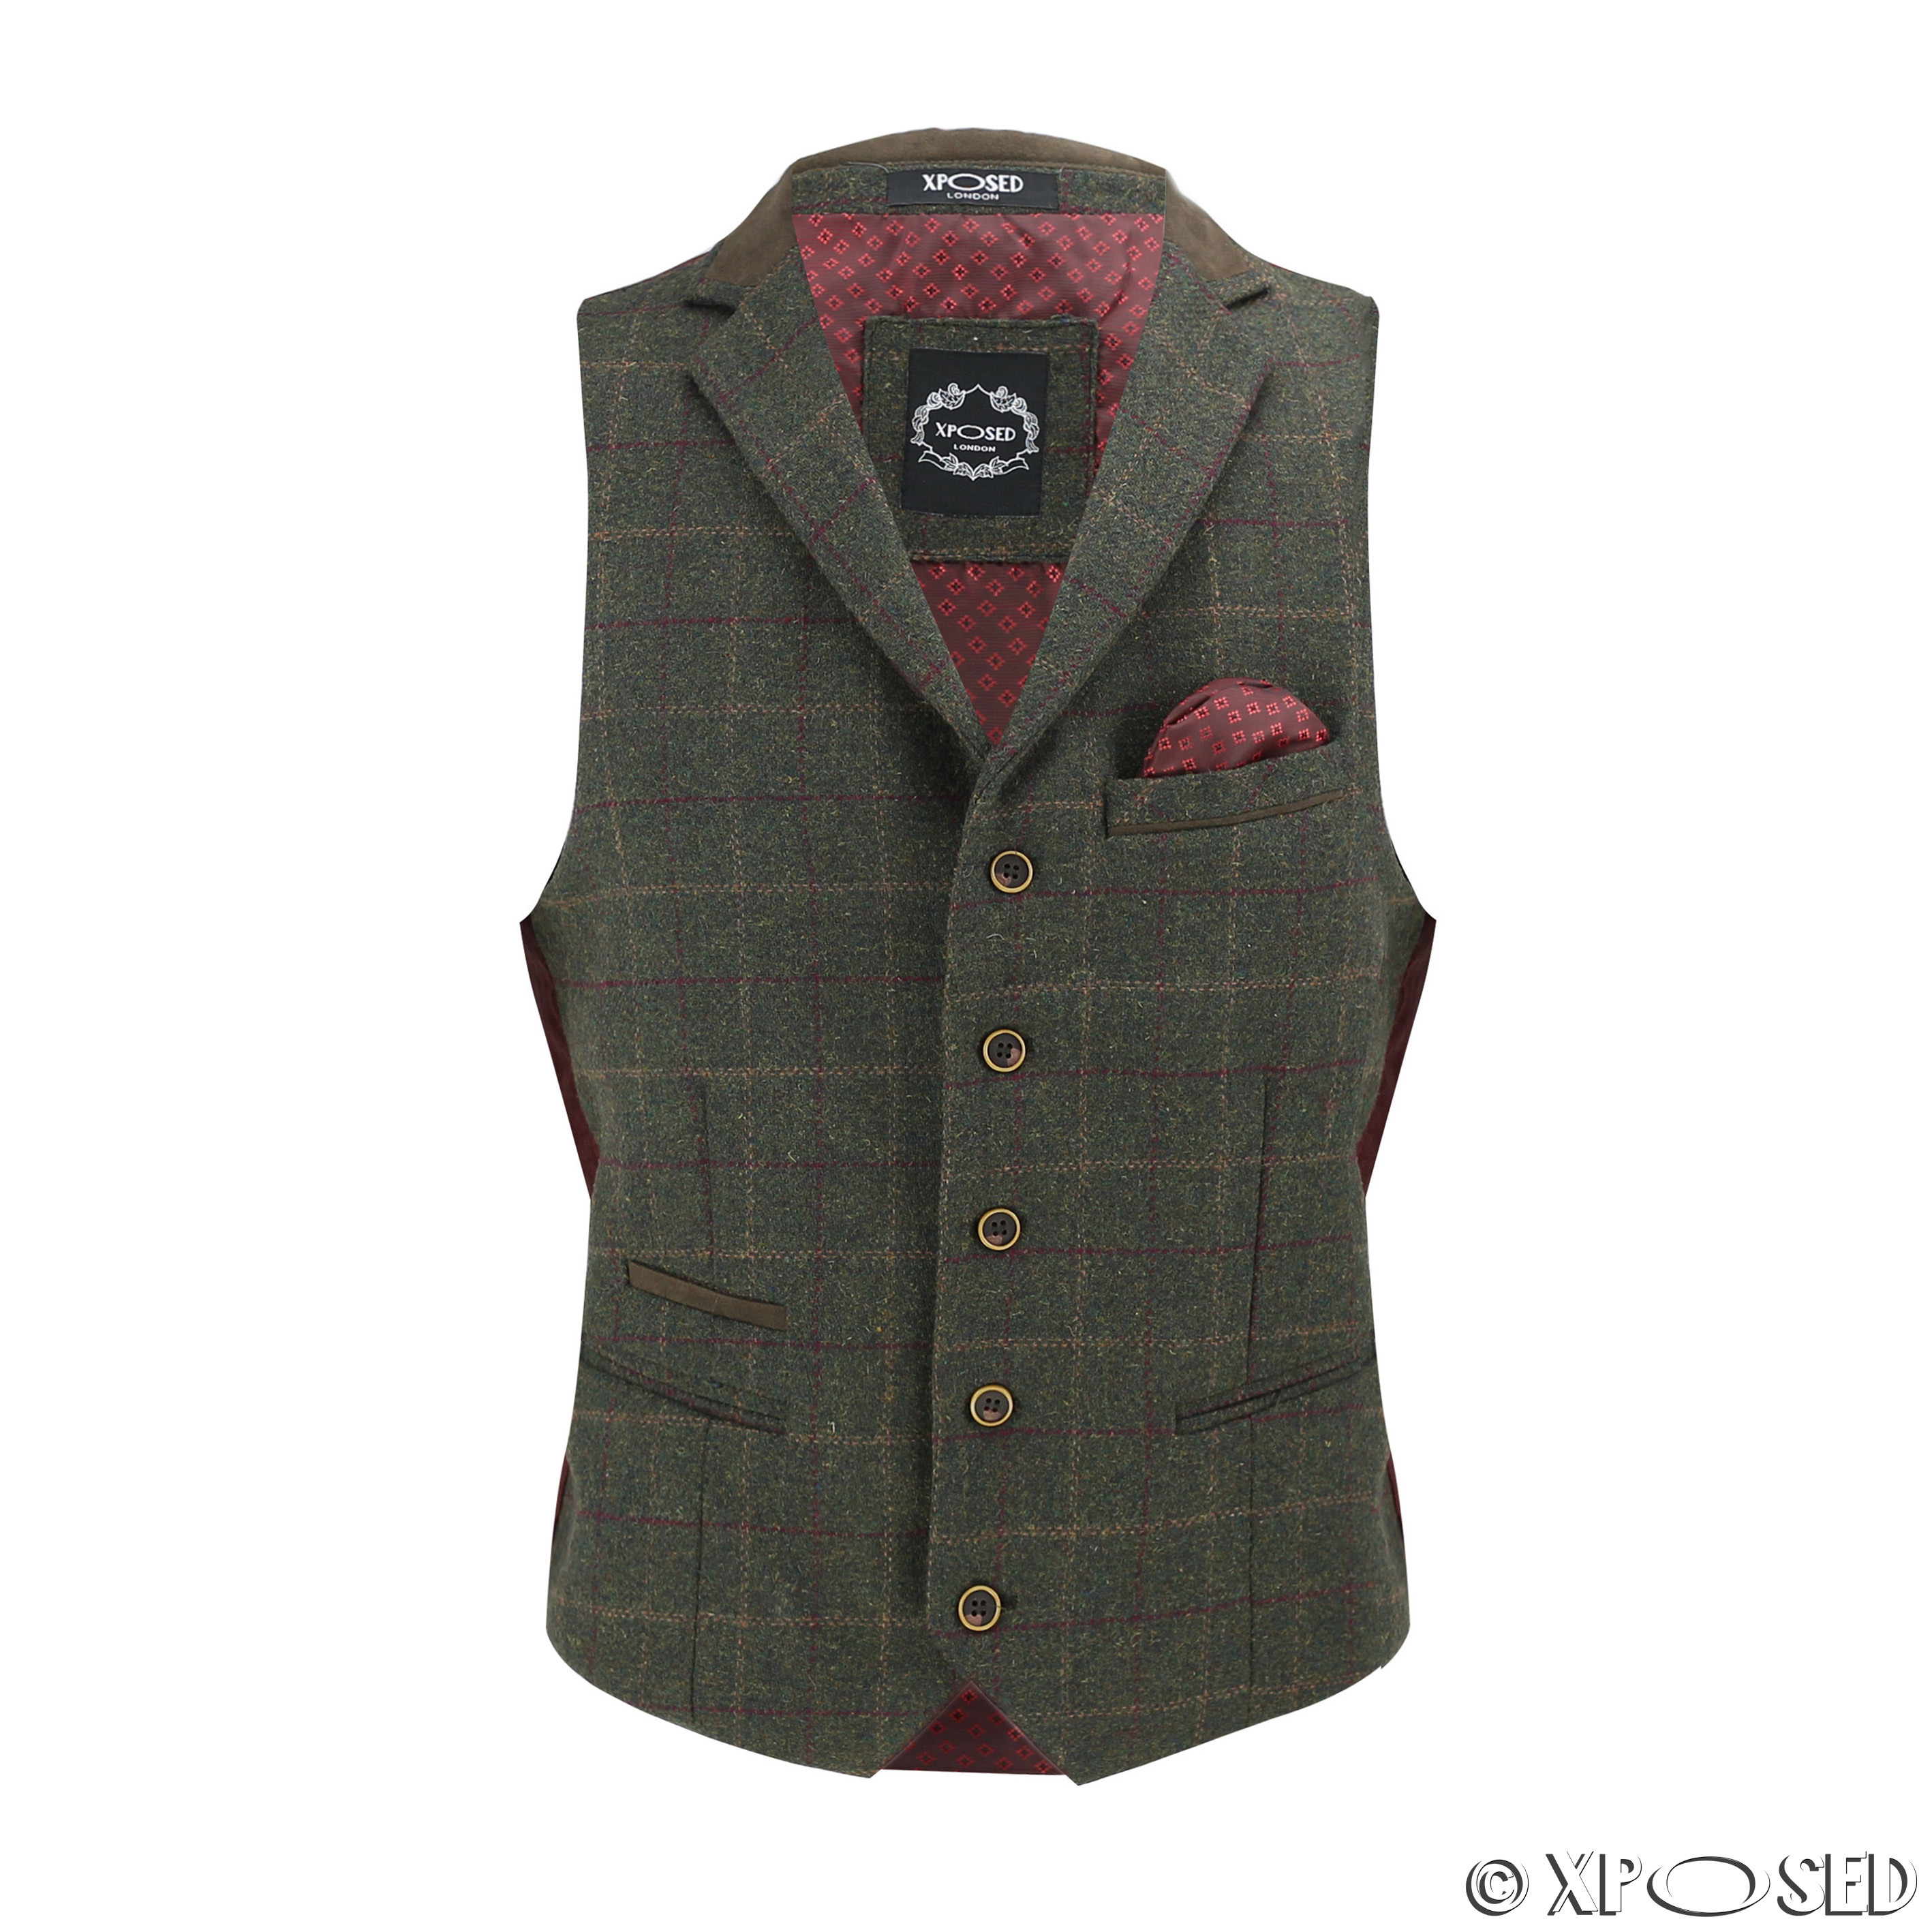 Mens Wool Mix Herringbone Tweed Check Vintage Collar Waistcoat Tailored Fit Vest | eBay